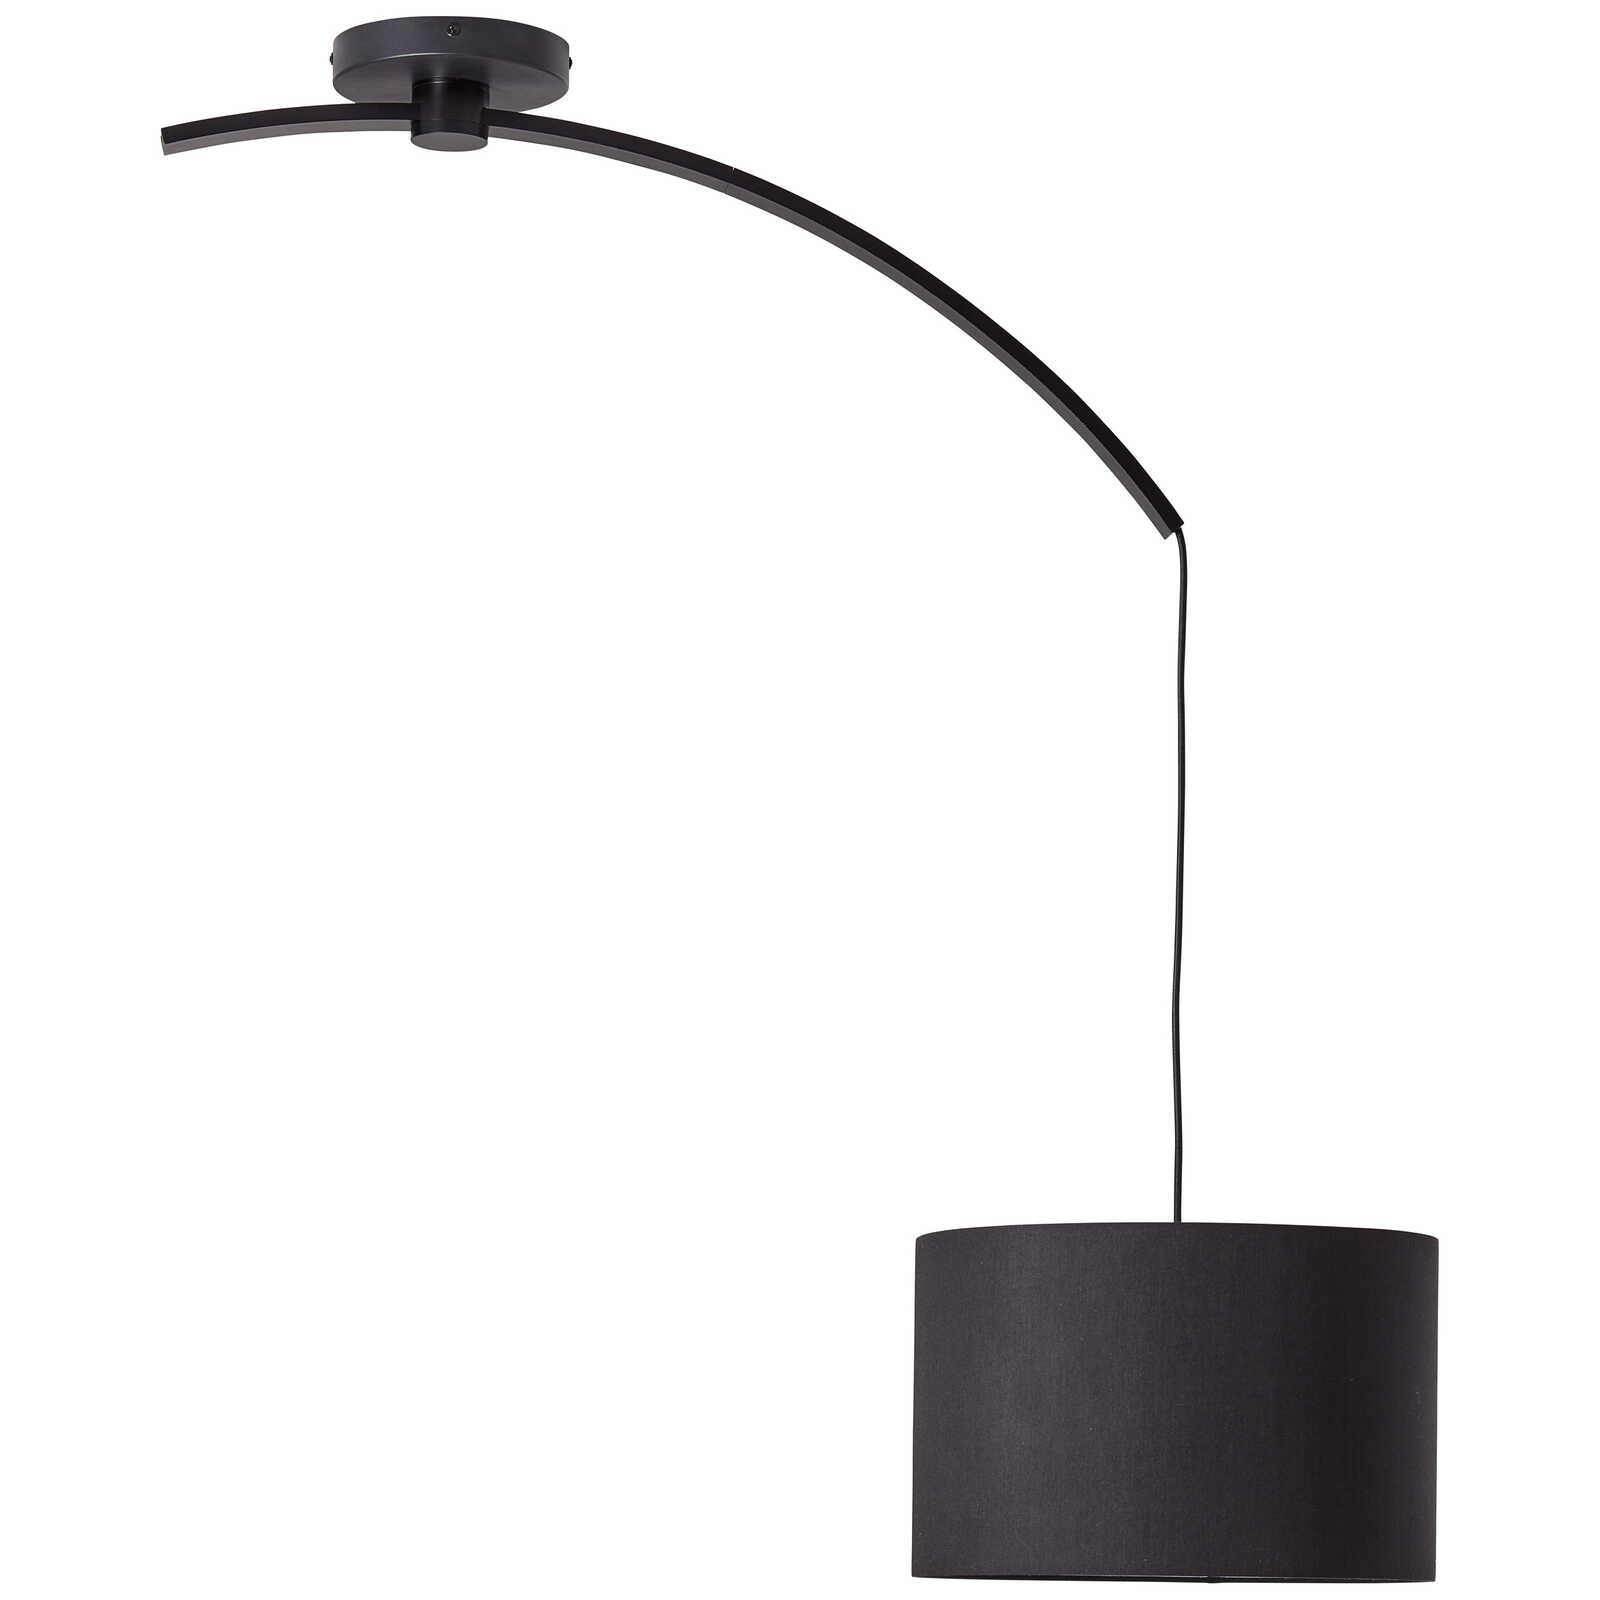             Textiel hanglamp - Enno 1 - Zwart
        